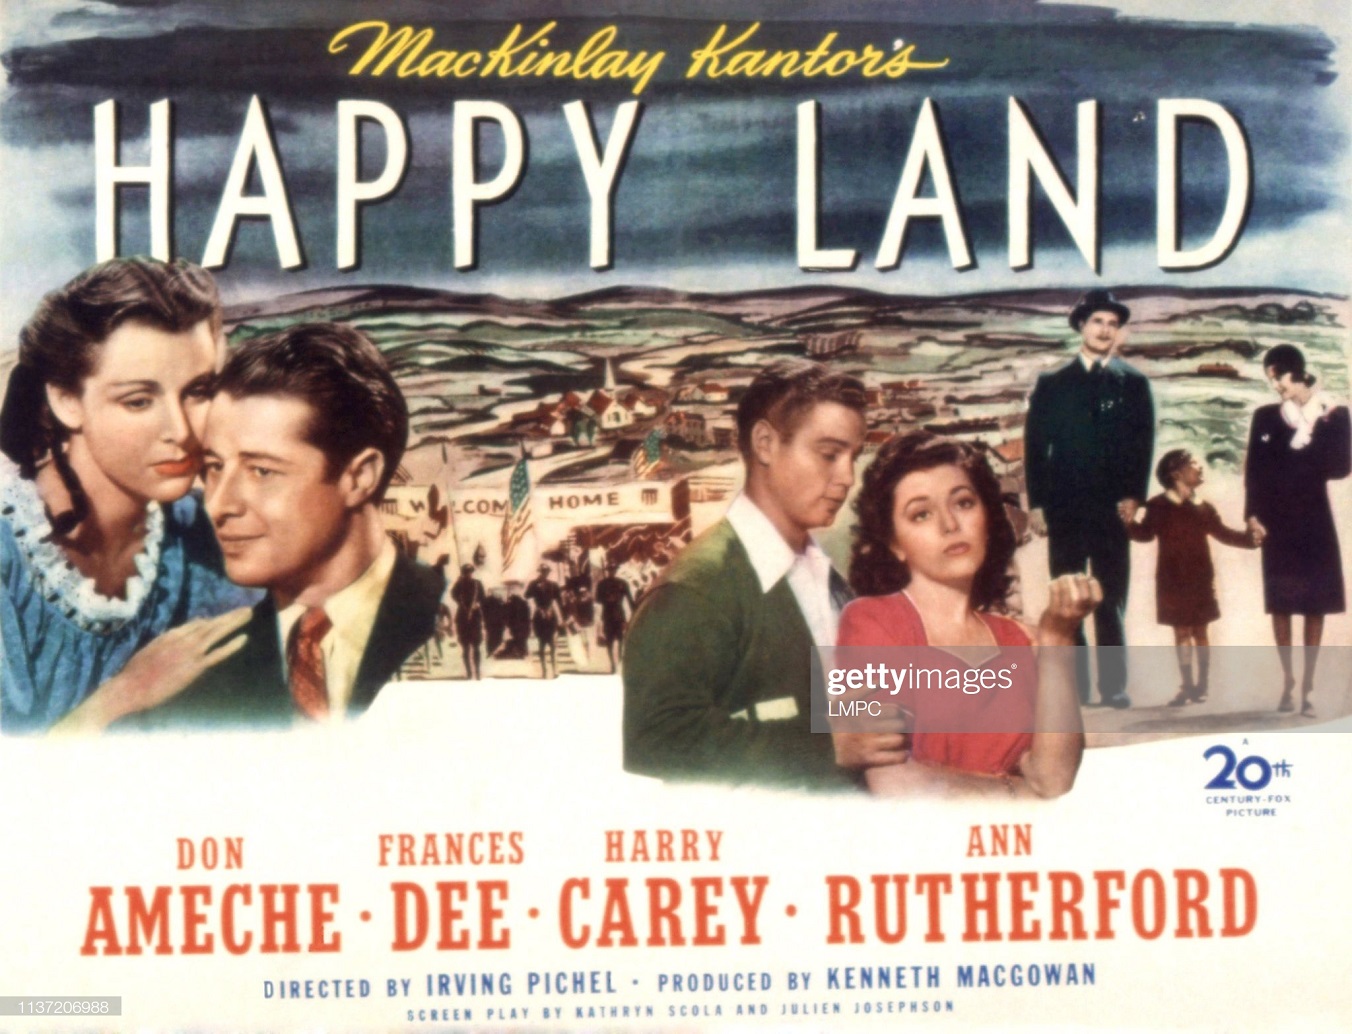 HAPPY LAND (1943)